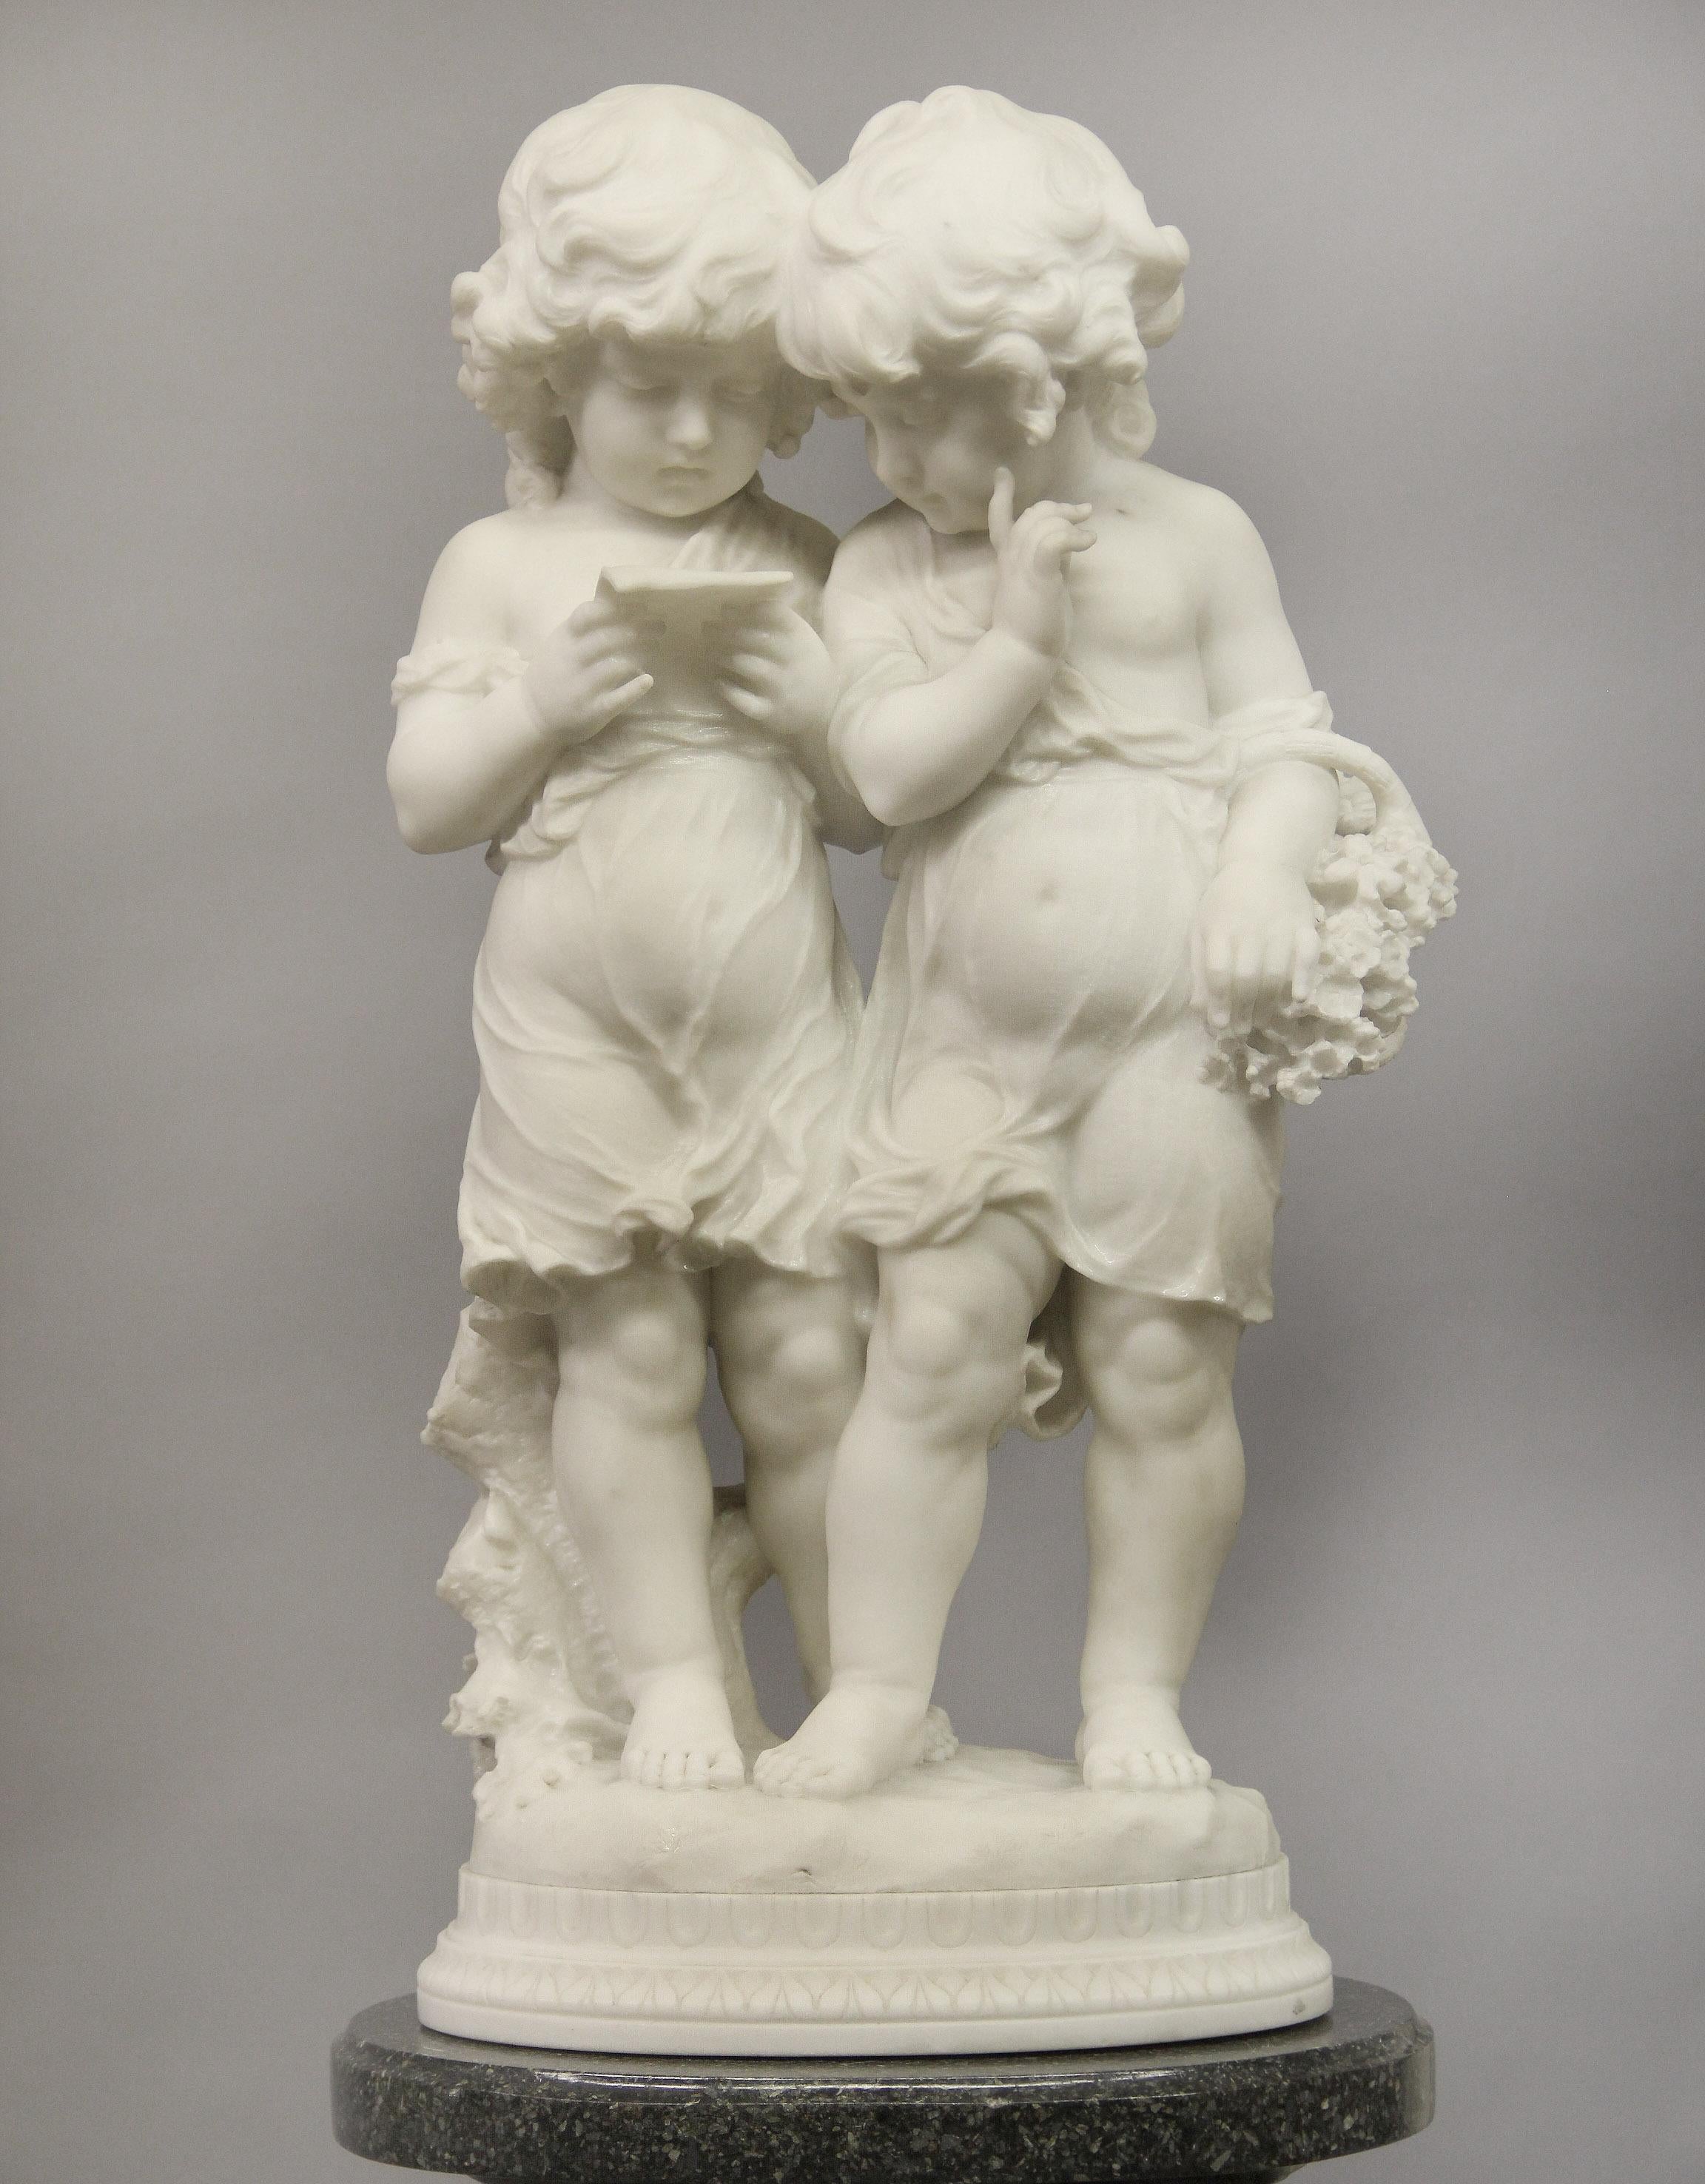 Eine schöne Skulptur aus italienischem Carrara-Marmor aus dem frühen 20. Jahrhundert von Affortunato Gori, die zwei Schwestern darstellt

Darstellung von zwei lesenden kleinen Mädchen, eines mit einem Blumenkorb, auf einem ovalen geschnitzten